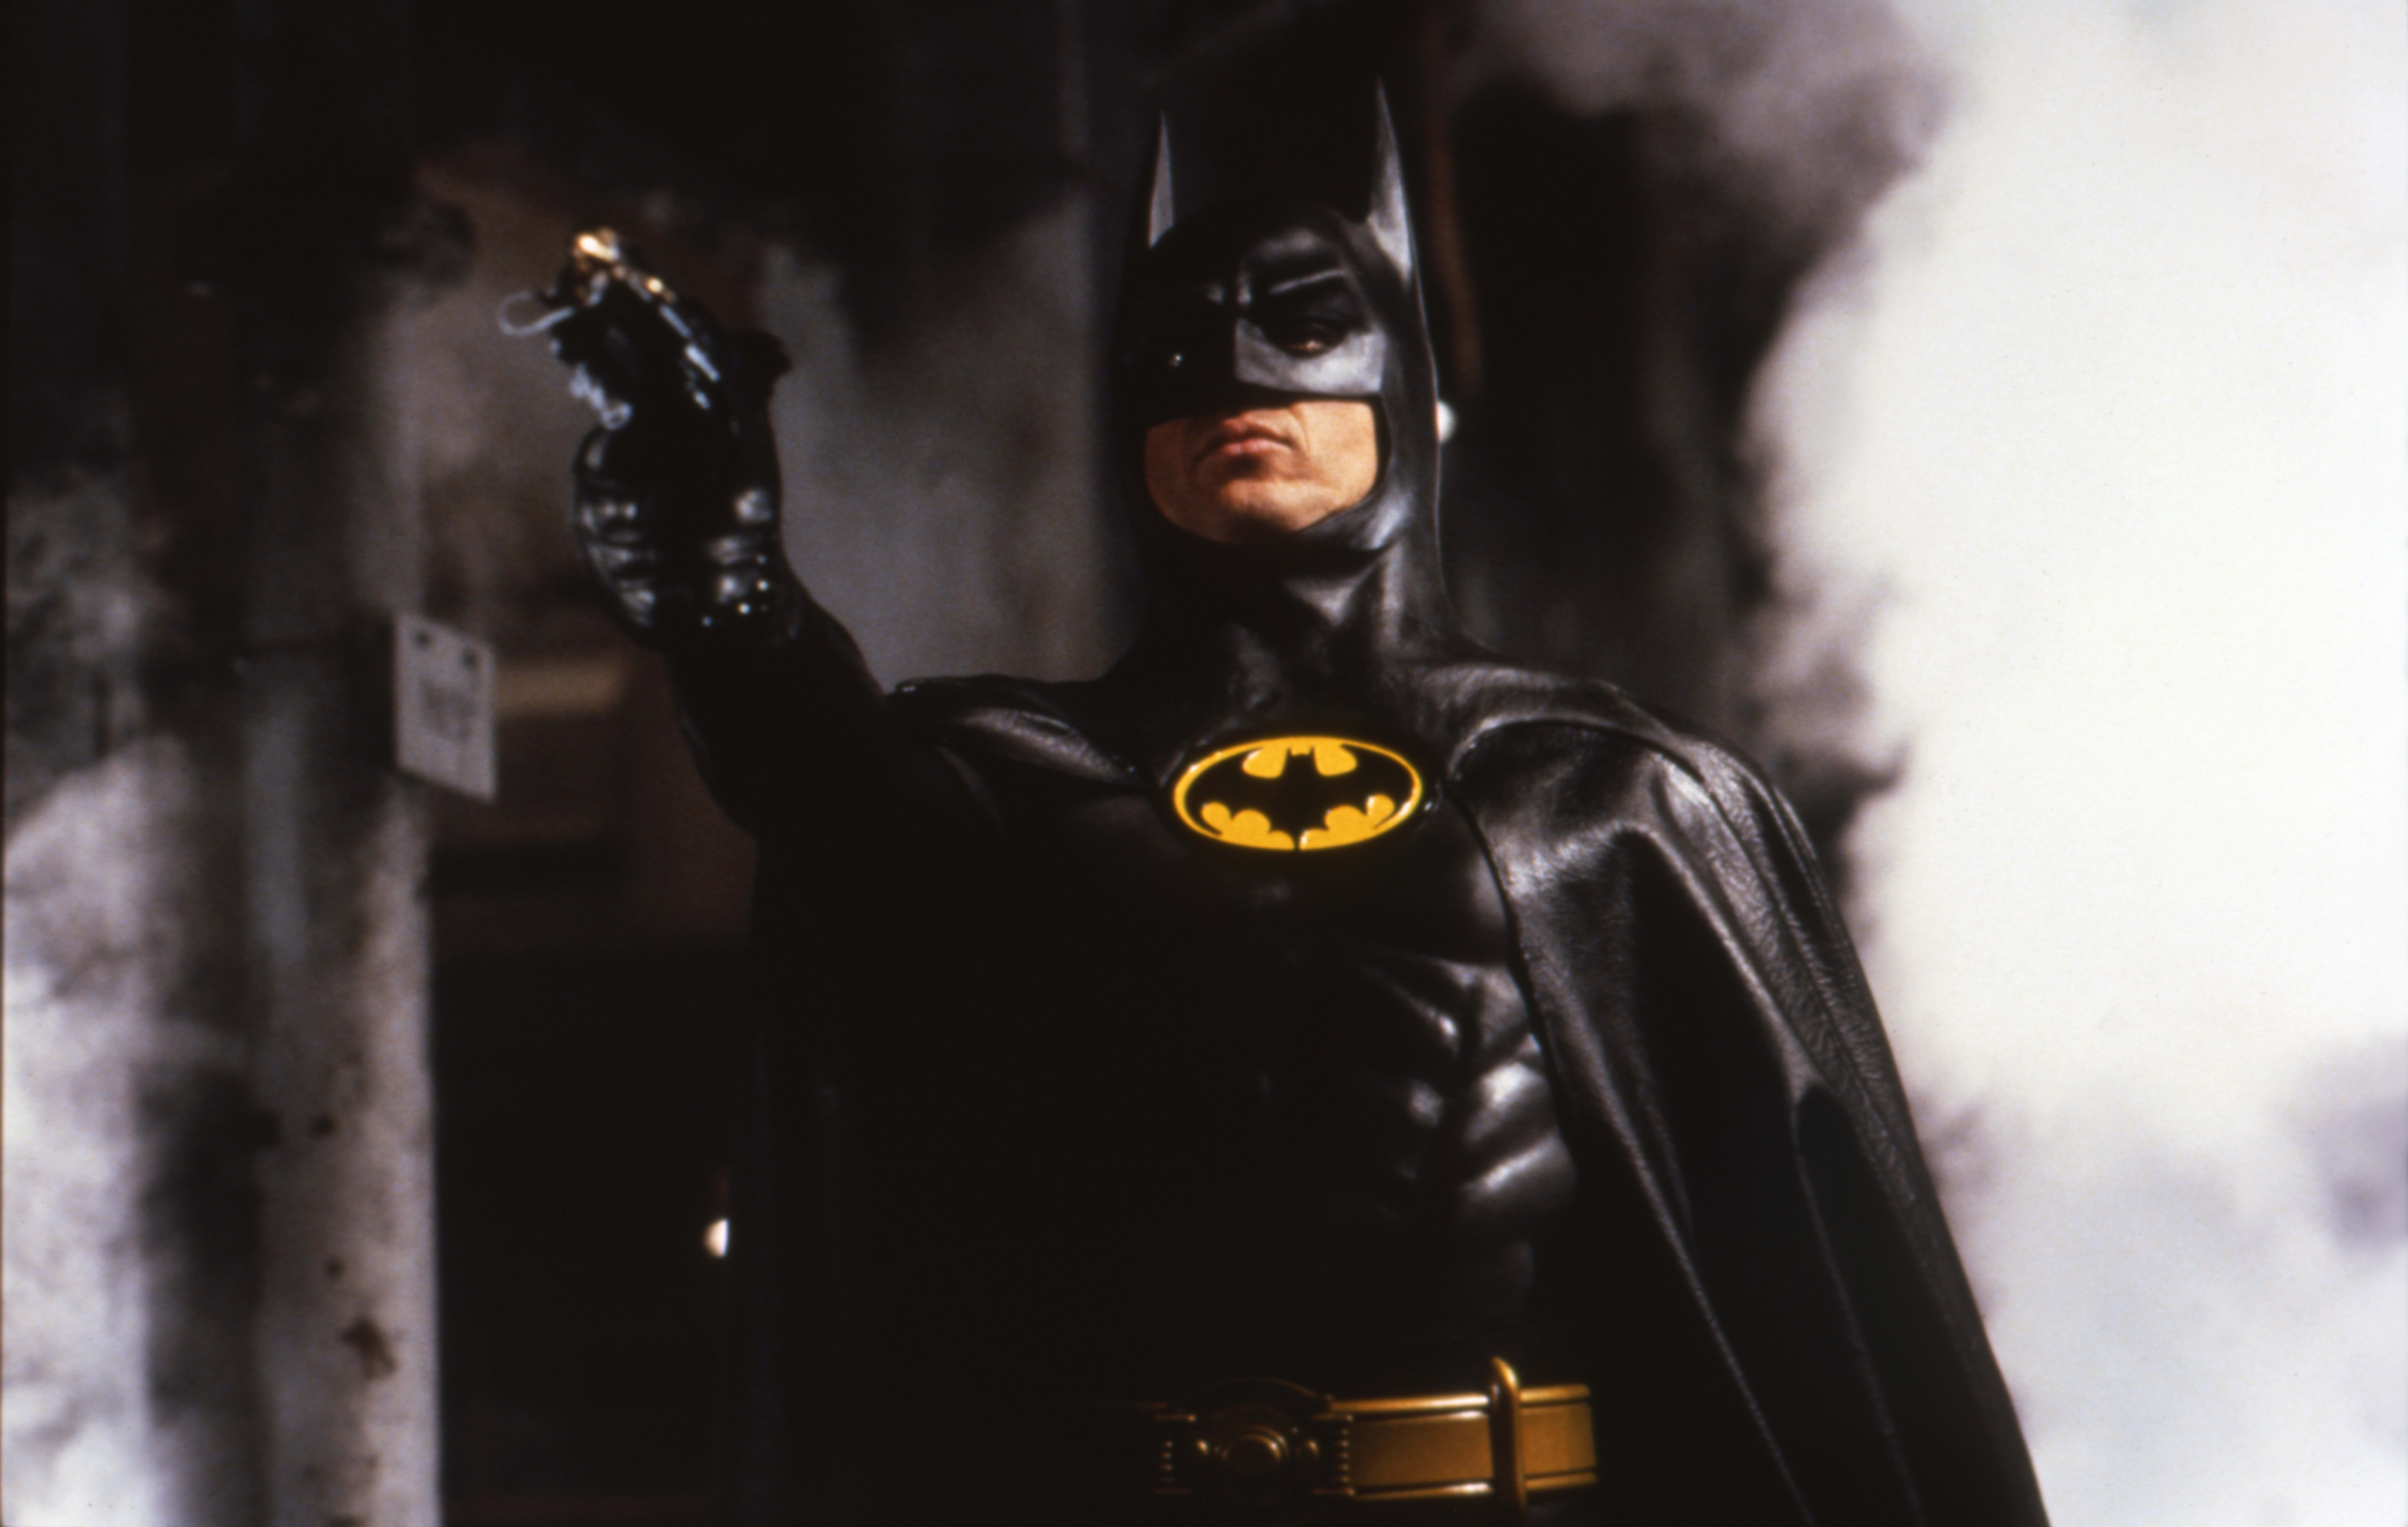 Michael Keaton as Batman pointing a gun